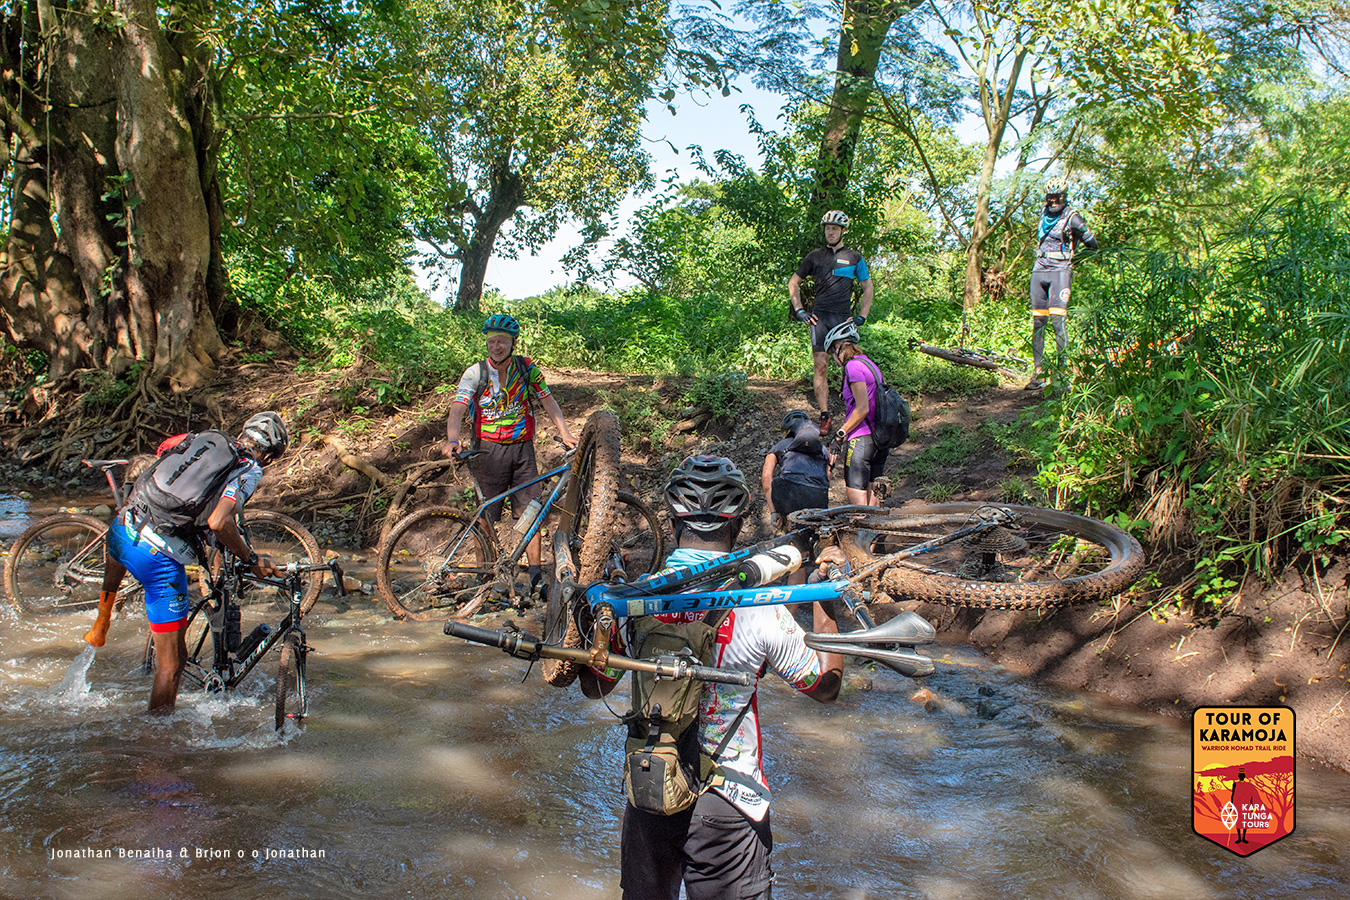 kara-tunga-tour-of-karamoja-2020-uganda-warrior-nomad-trail-bike-event-251